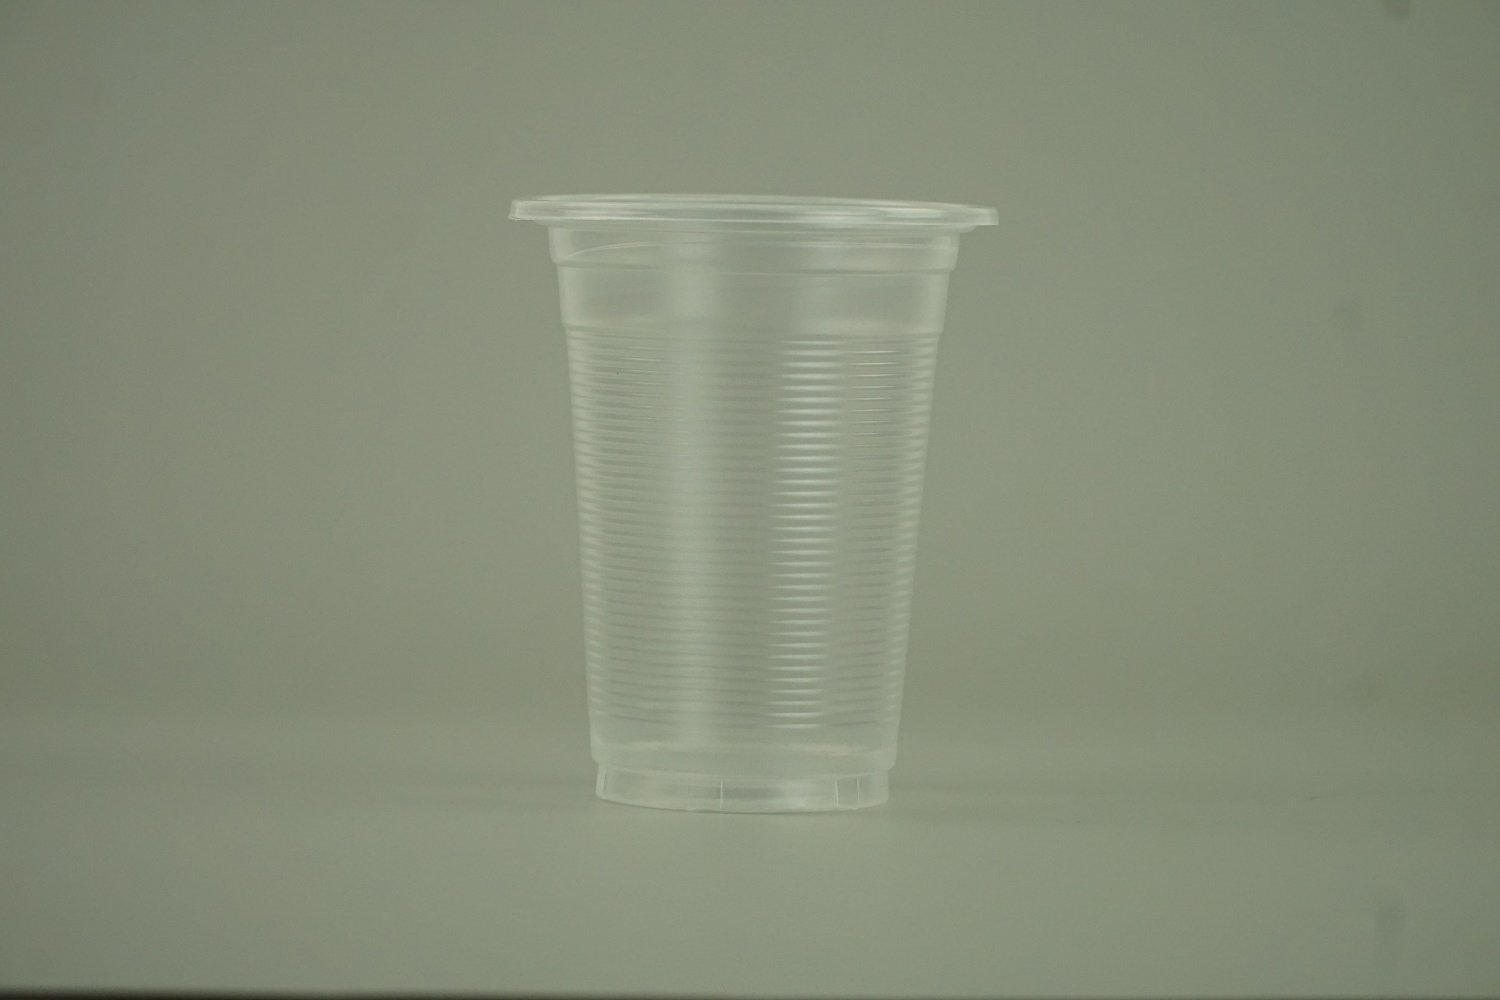 แก้วน้ำ 11 ออนซ์ แก้วพลาสติก PP ลอนใส รุ่นประหยัด ขนาด 8.5x10.5x5 cm.